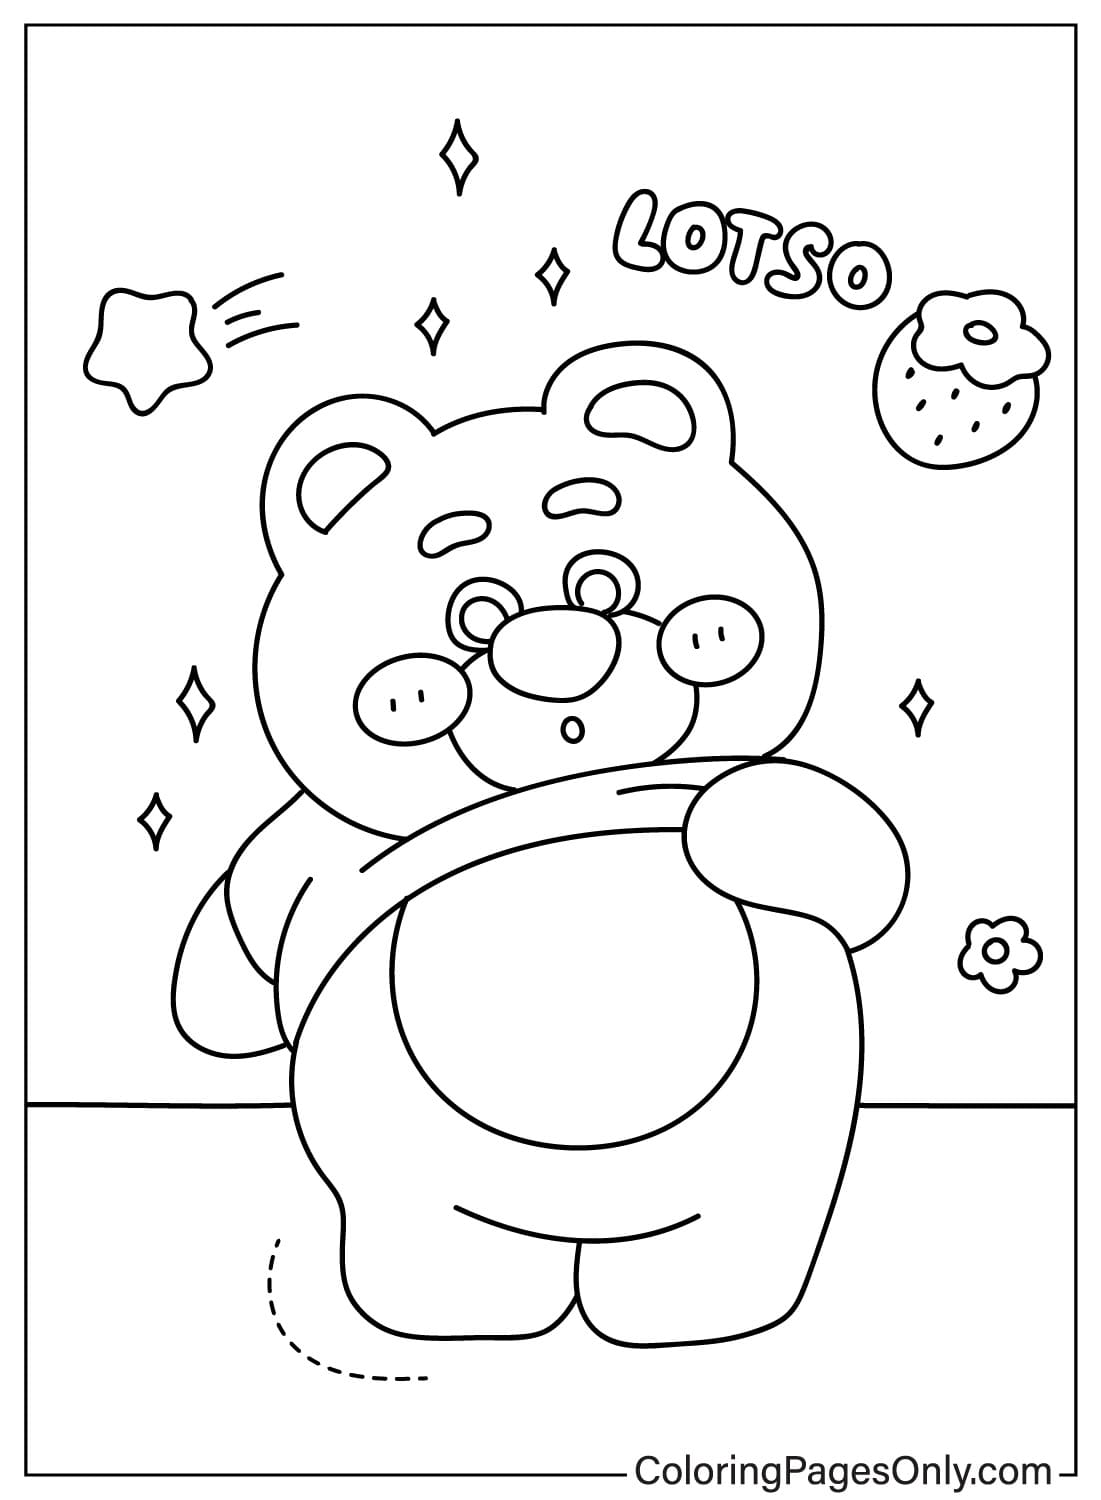 Images Lotso Bear Coloring Page from Lotso Bear